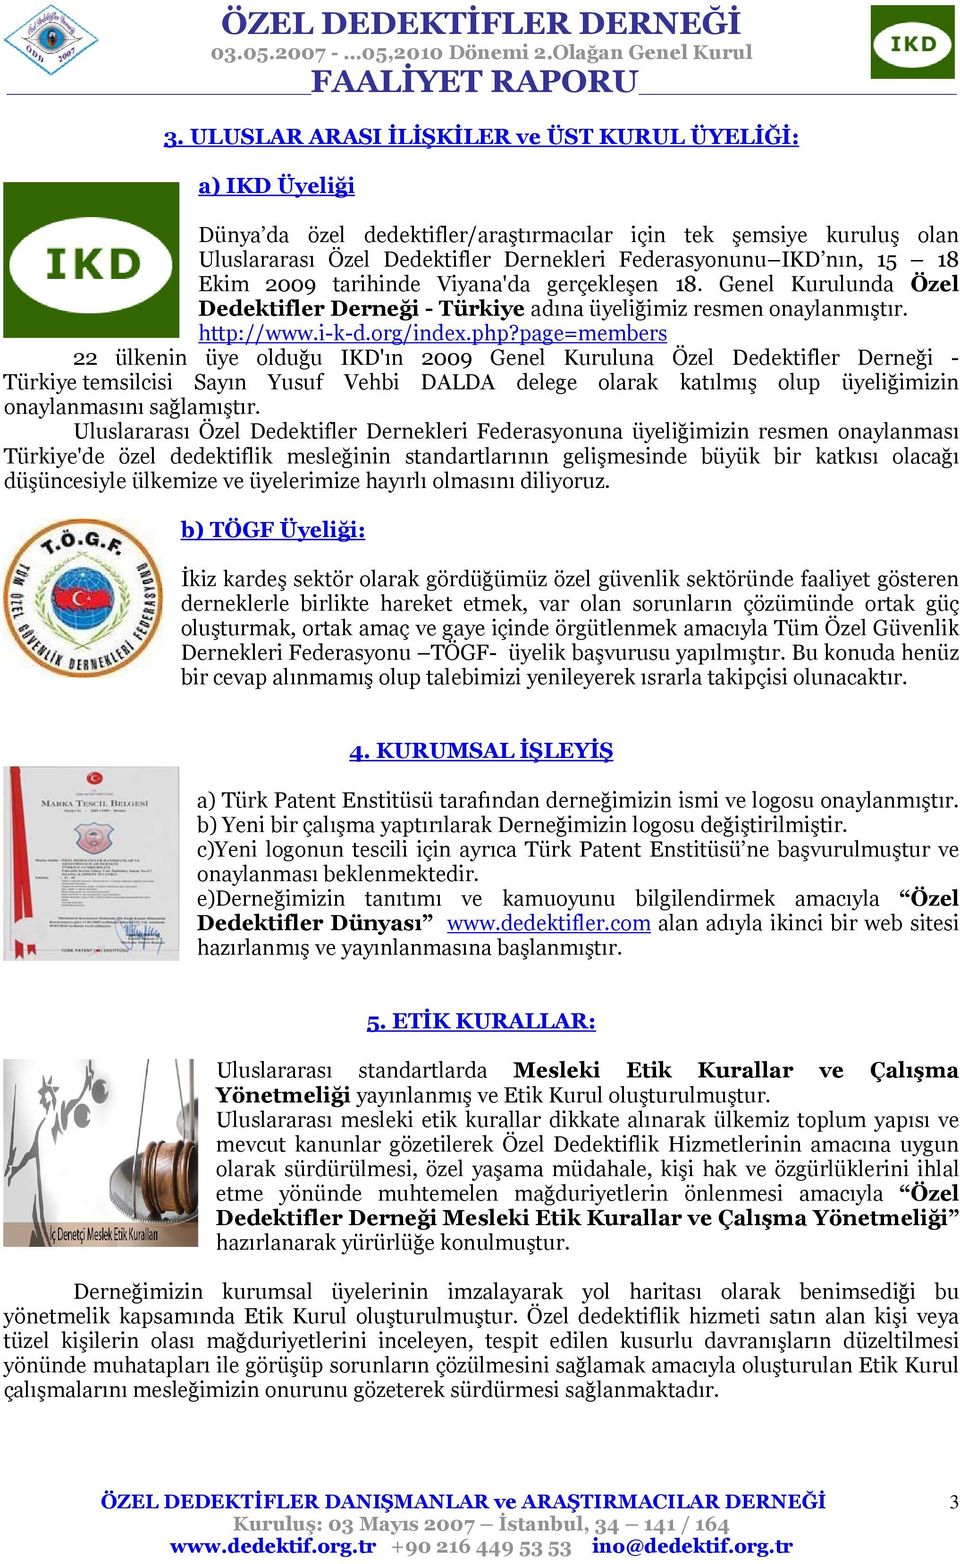 page=members 22 ülkenin üye olduğu IKD'ın 2009 Genel Kuruluna Özel Dedektifler Derneği - Türkiye temsilcisi Sayın Yusuf Vehbi DALDA delege olarak katılmış olup üyeliğimizin onaylanmasını sağlamıştır.